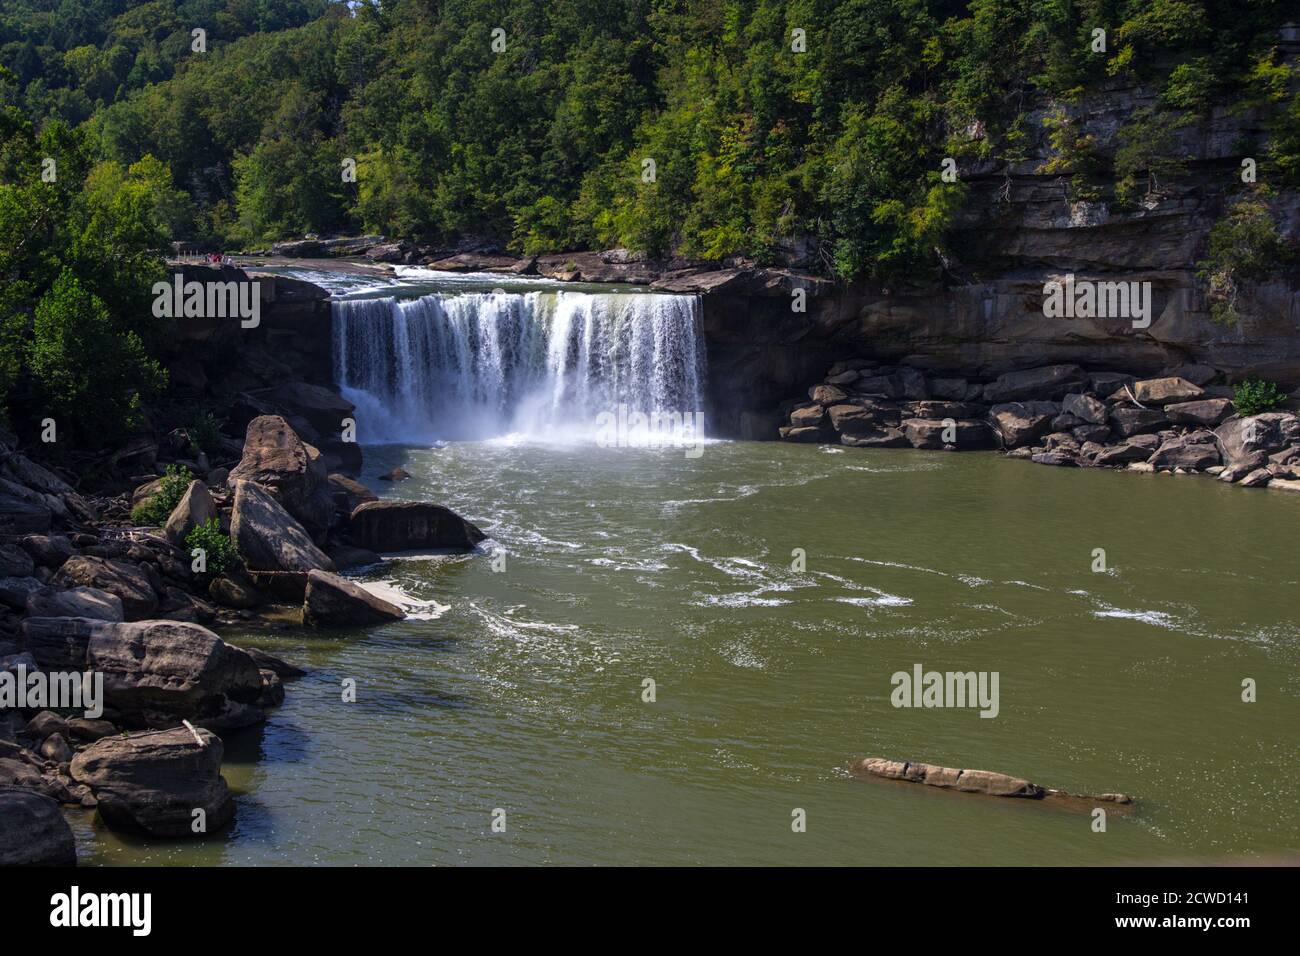 La hermosa Cumberland Falls es la pieza central del Parque Estatal Cumberland Falls en Corbin, Kentucky, Estados Unidos. Foto de stock